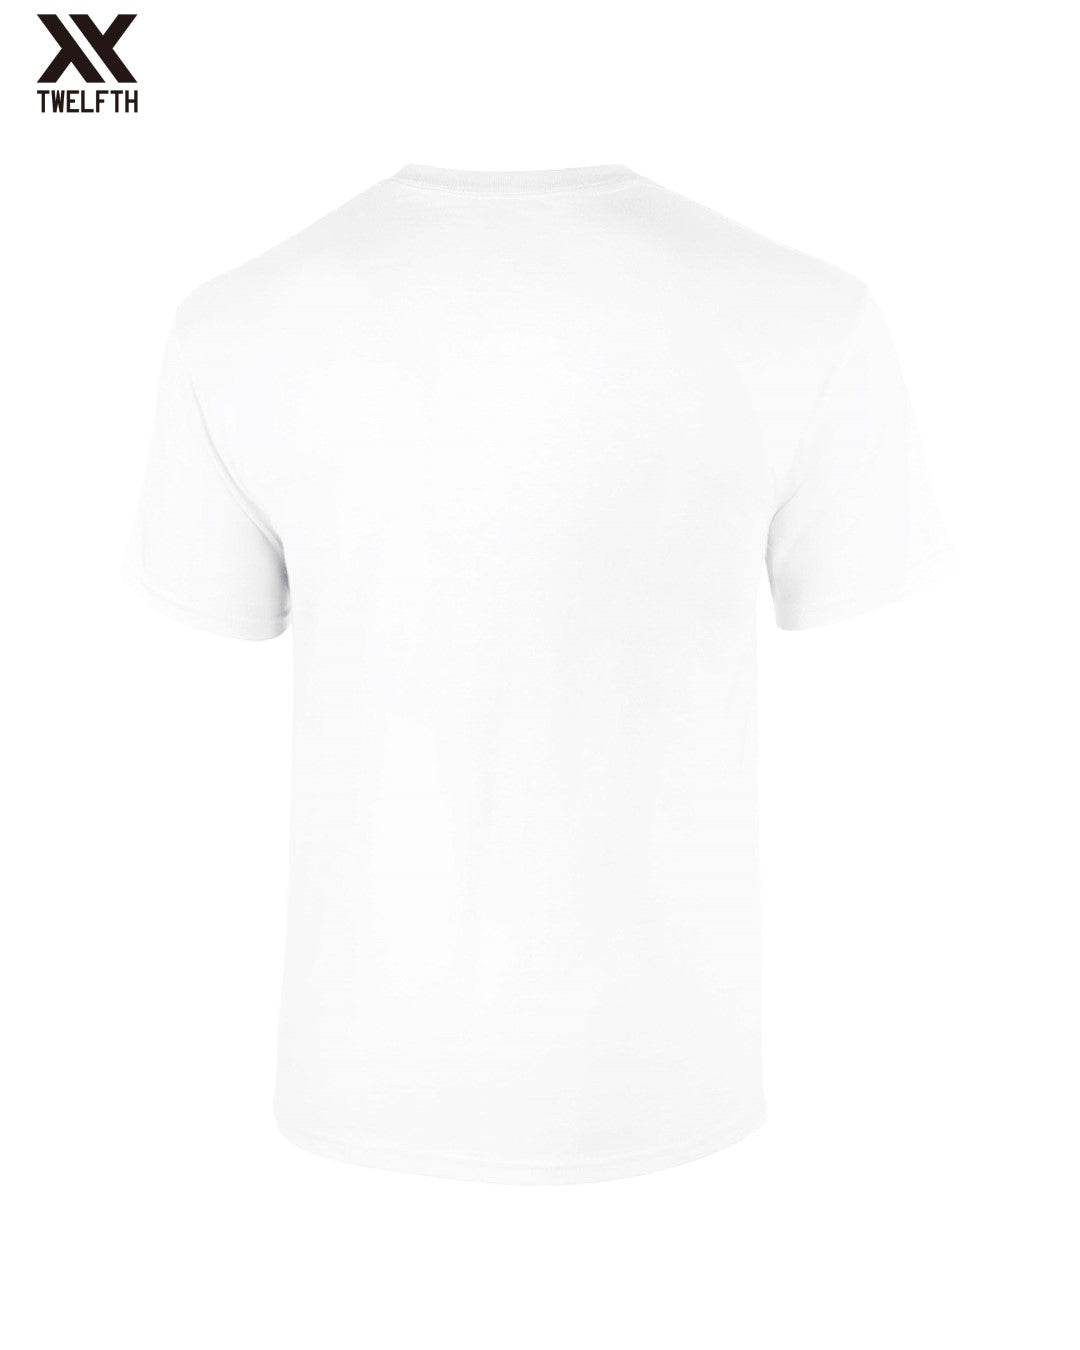 Chelsea Crest T-Shirt - Mens